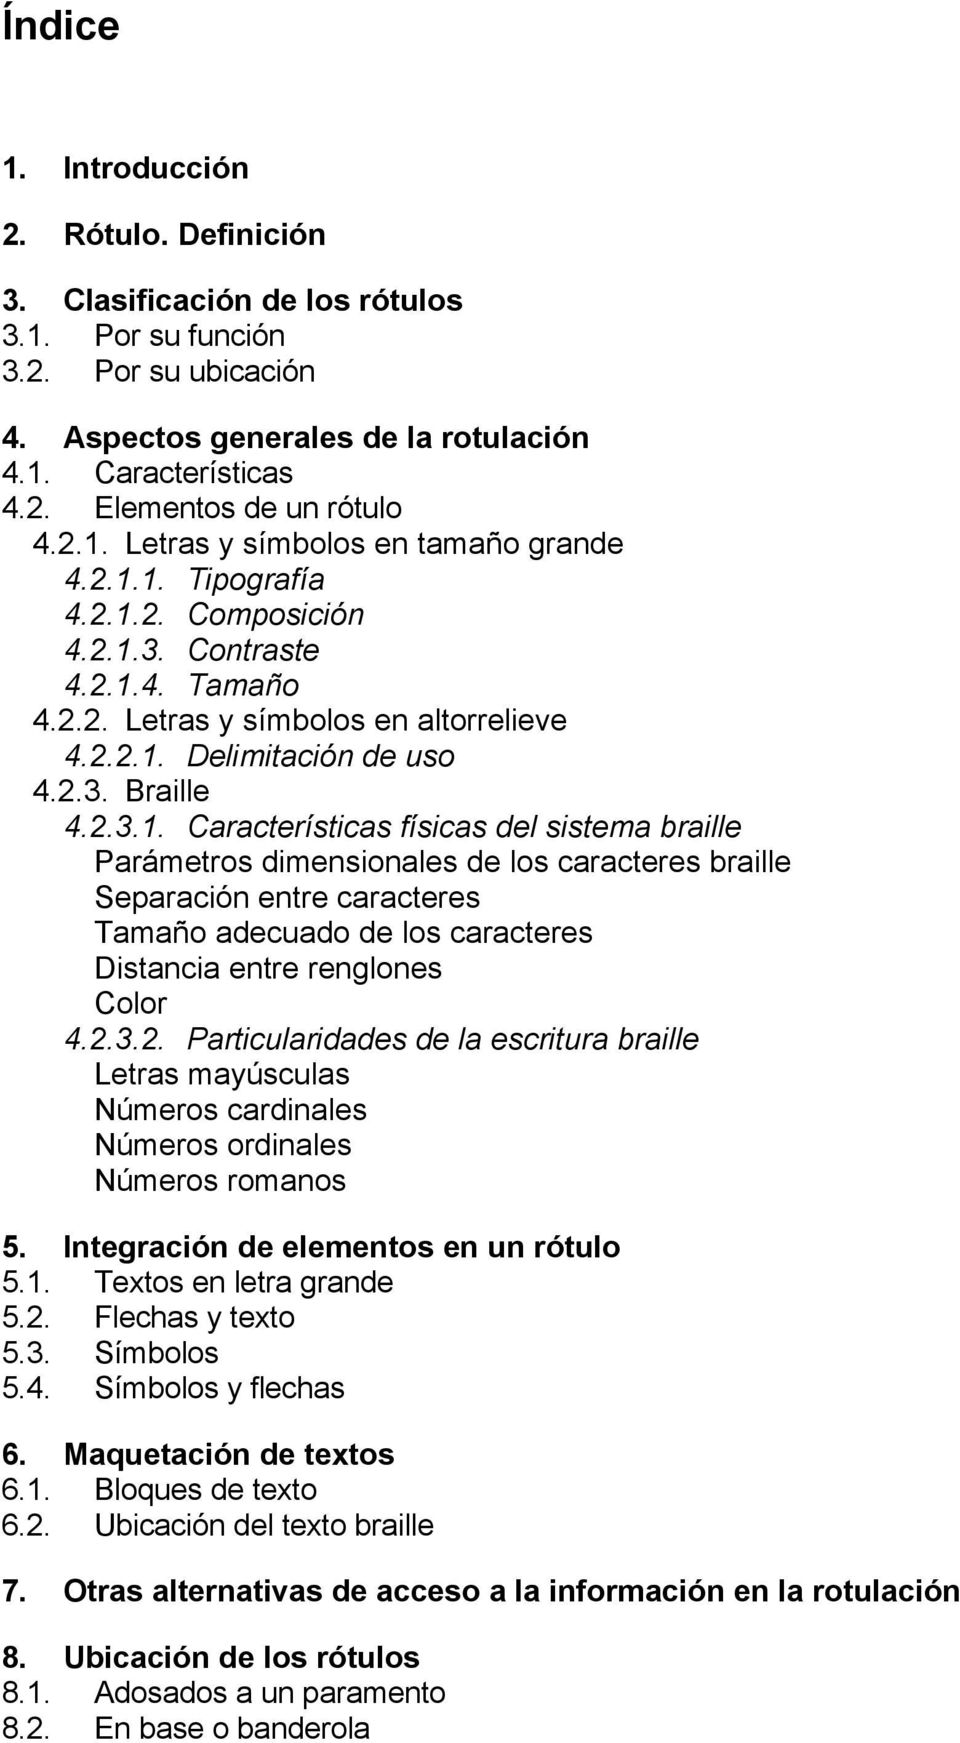 2.3.1. Características físicas del sistema braille Parámetros dimensionales de los caracteres braille Separación entre caracteres Tamaño adecuado de los caracteres Distancia entre renglones Color 4.2.3.2. Particularidades de la escritura braille Letras mayúsculas Números cardinales Números ordinales Números romanos 5.